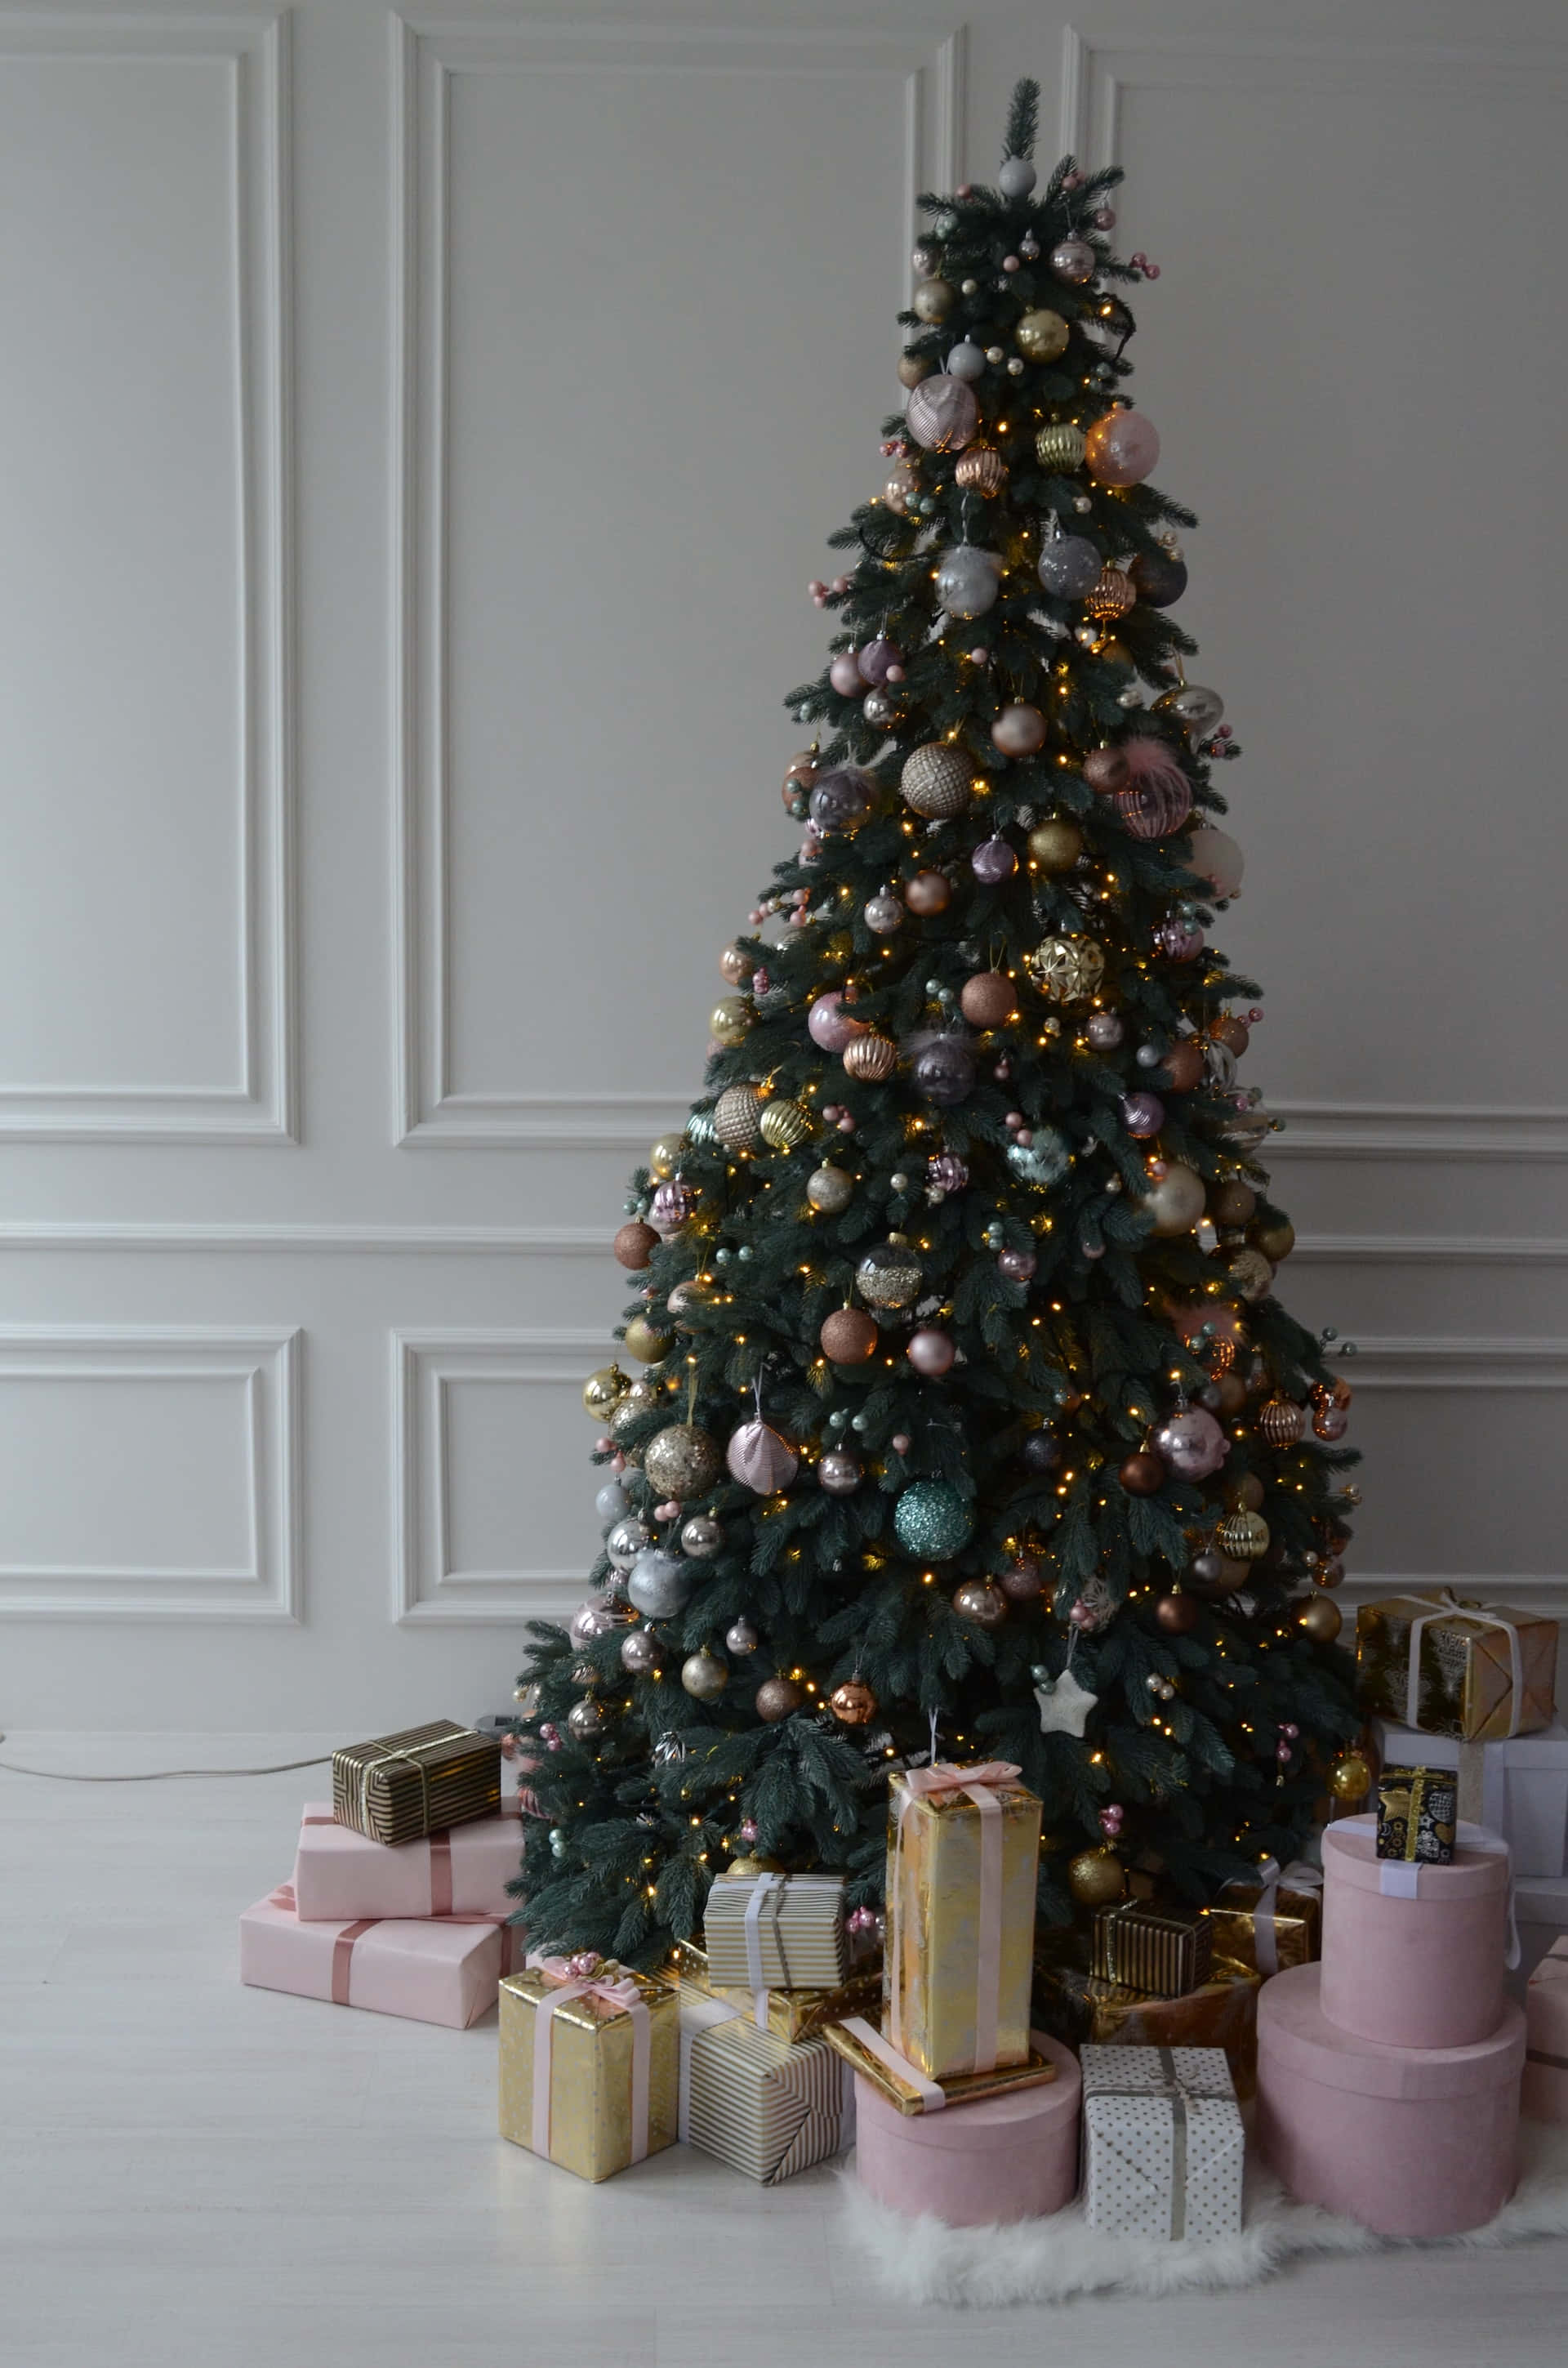 Einweihnachtsbaum Mit Geschenken Auf Dem Boden. Wallpaper